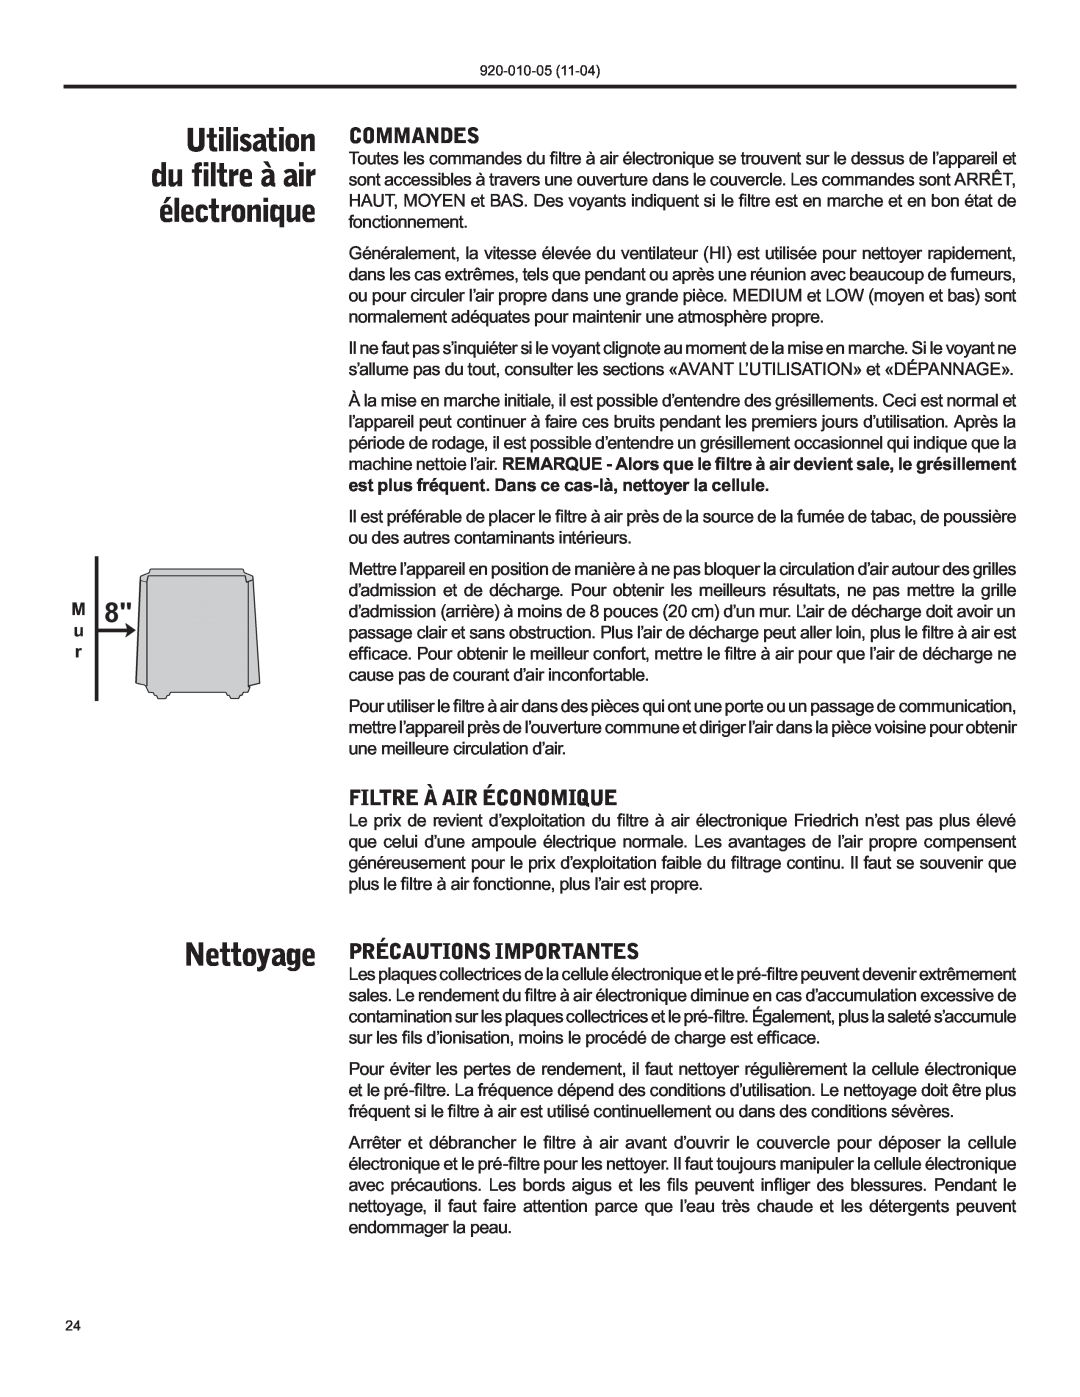 Nilfisk-ALTO C-90A manual Utilisation du filtre à air électronique, Commandes, Filtre À Air Économique, M u r 